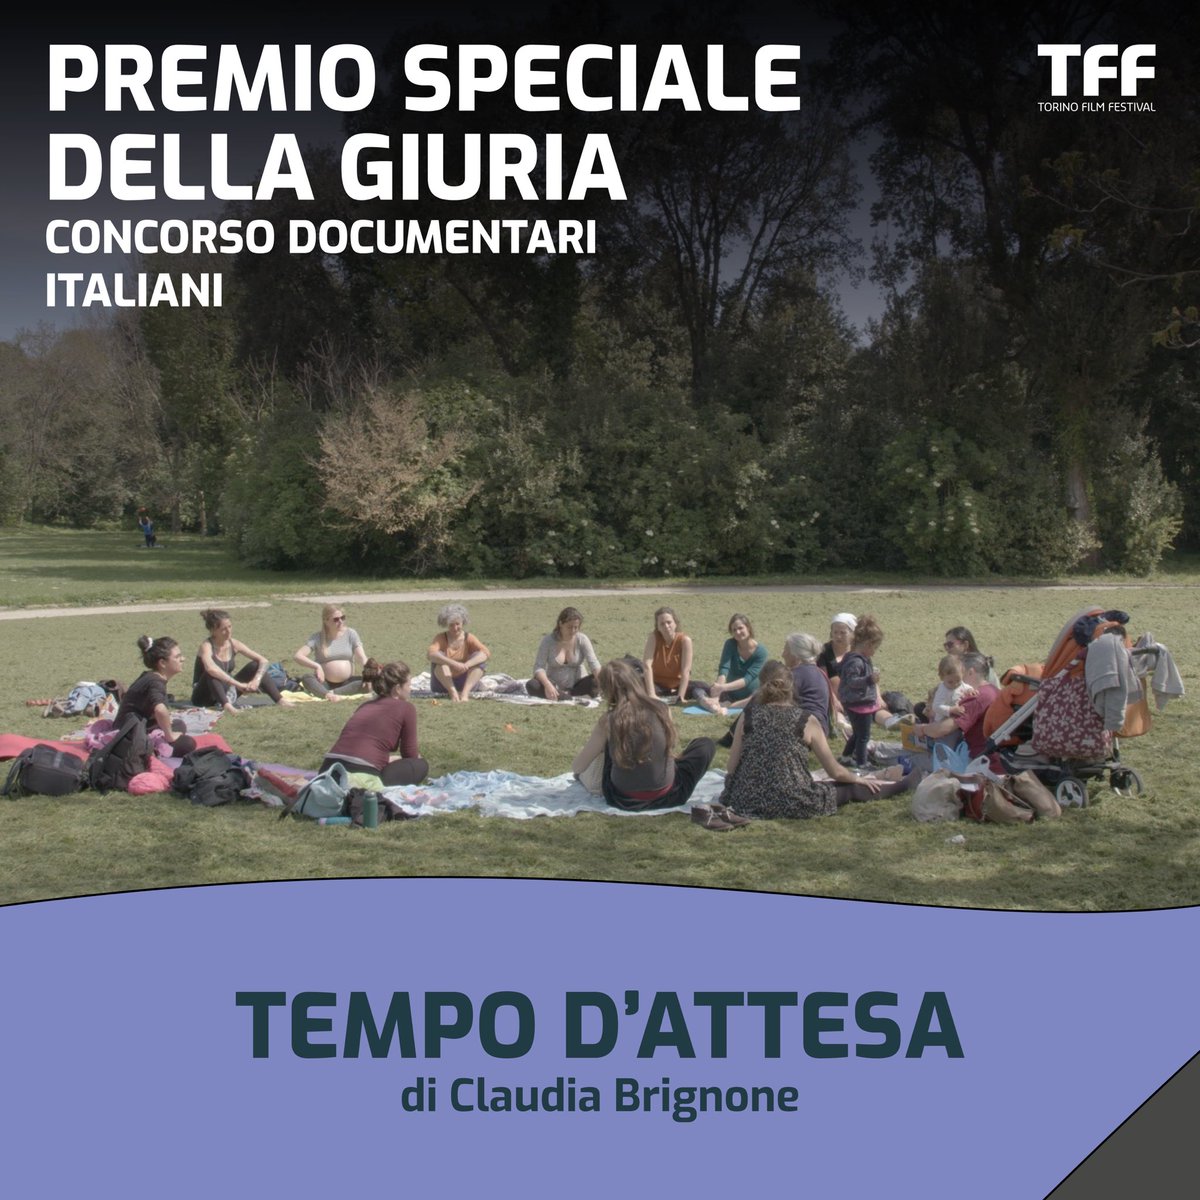 Il Premio speciale va a TEMPO D'ATTESA di Claudia Brignone.